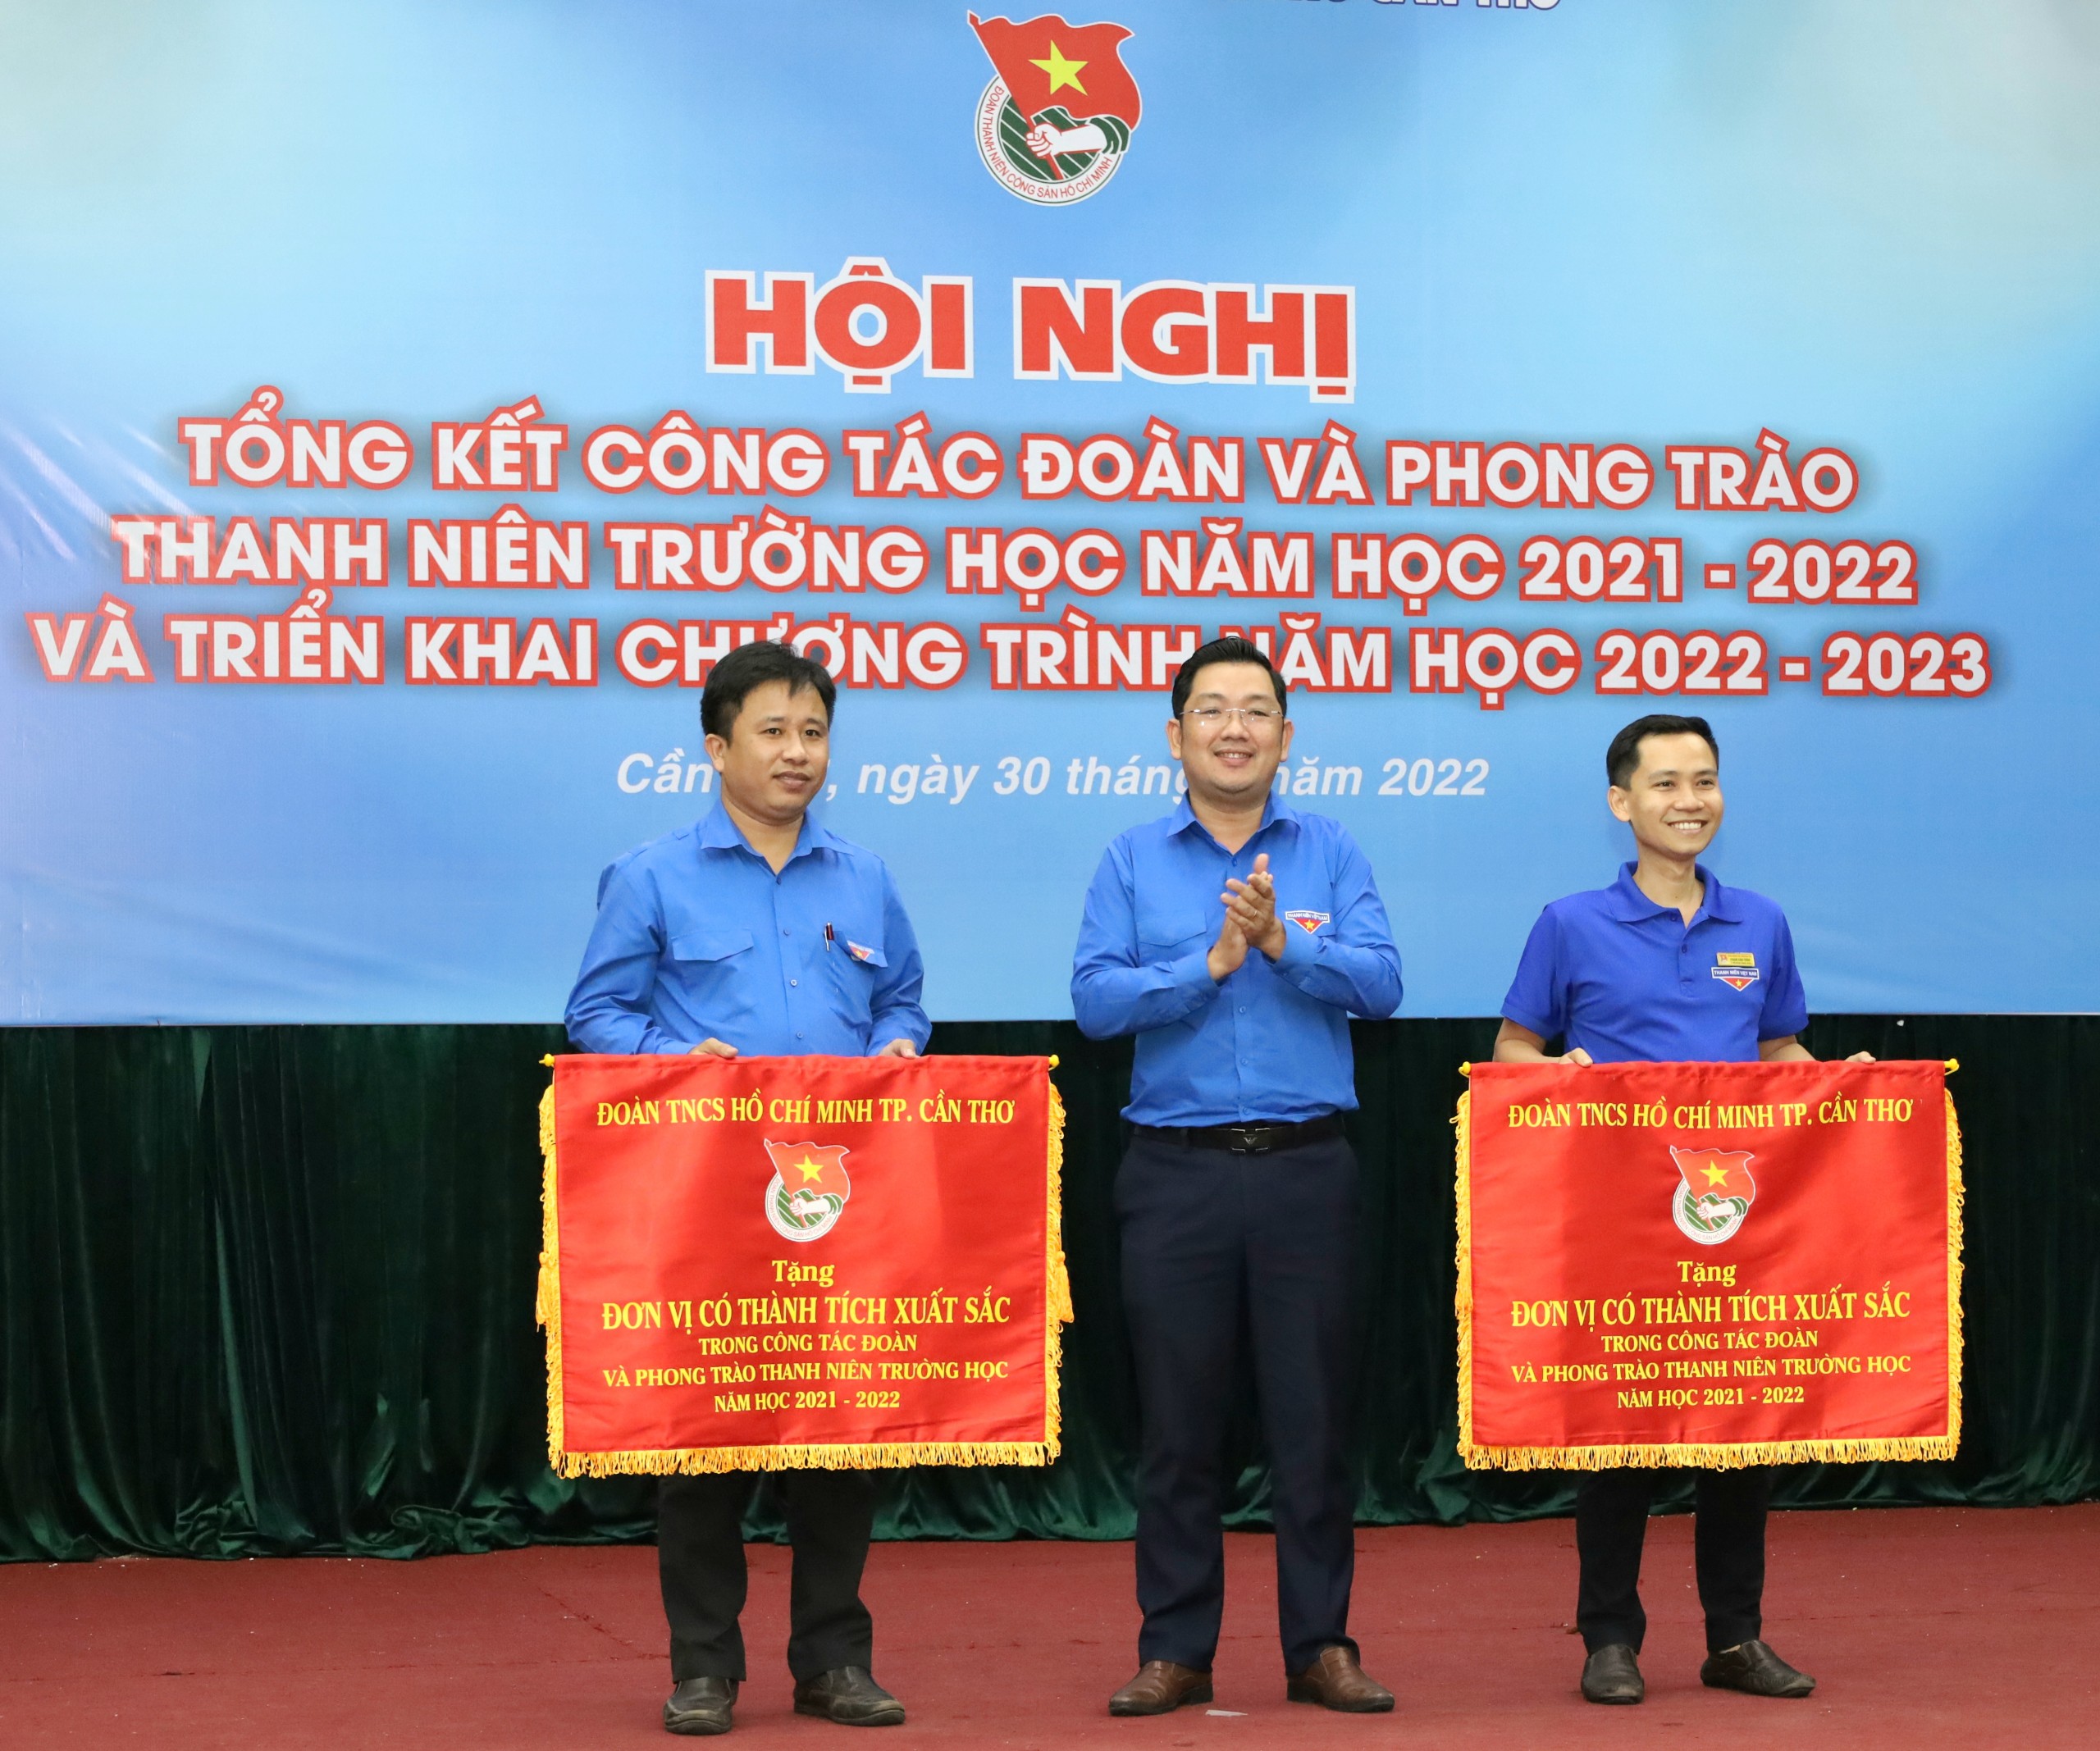 Anh Lâm Văn Tân - Phó Bí thư Thành đoàn Cần Thơ trao tặng cờ thi đua cho các đơn vị có thành tích xuất sắc trong công tác Đoàn và phong trào thanh niên trường học năm học 2021 – 2022.